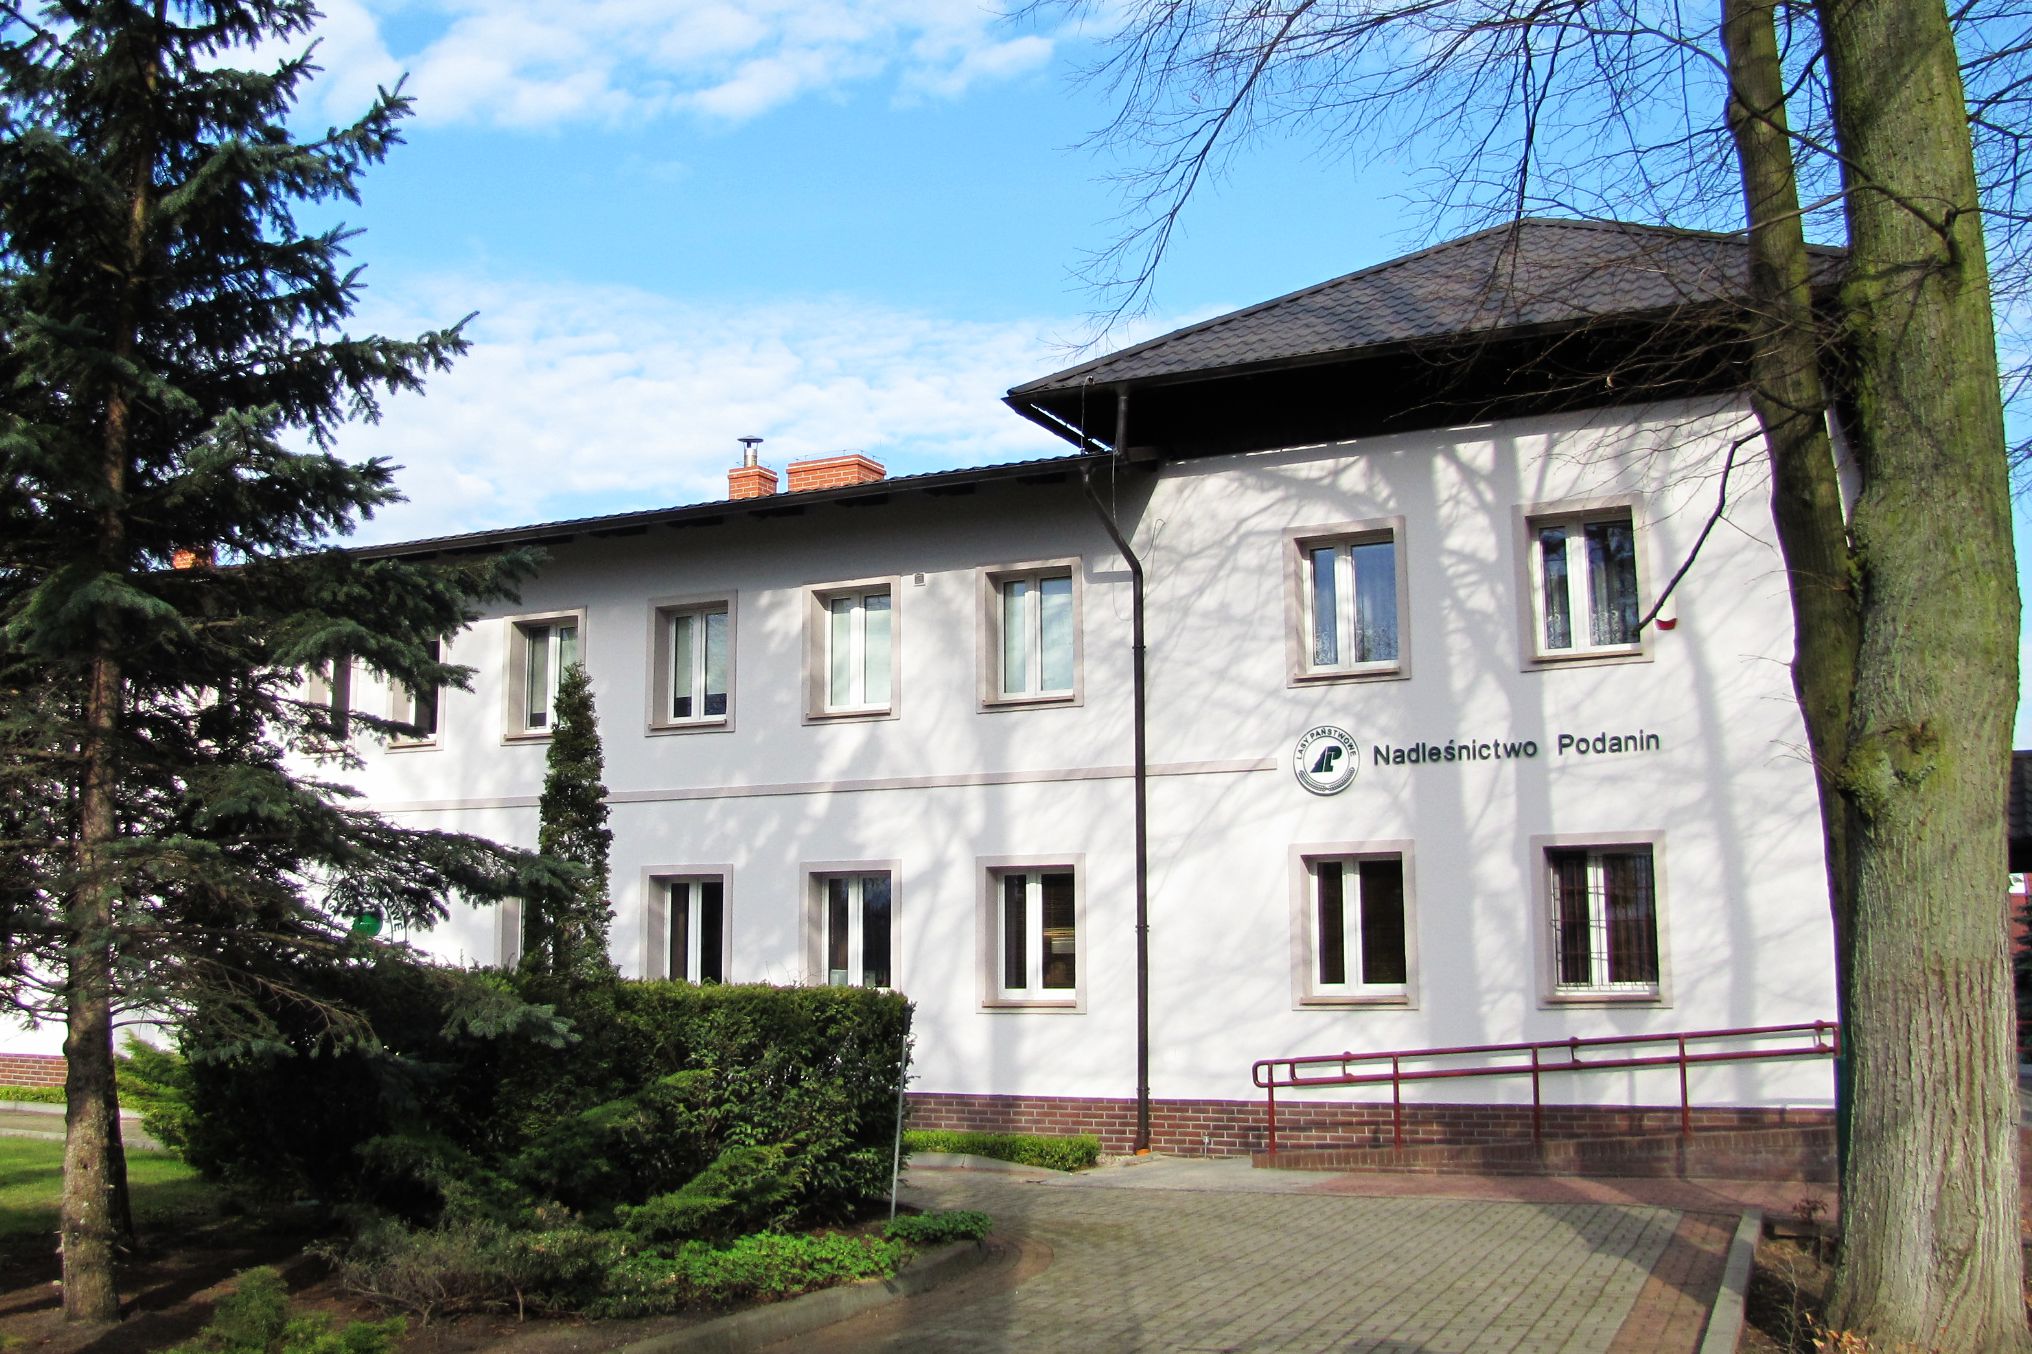 Headquarters Nadleśnictwo Podanin